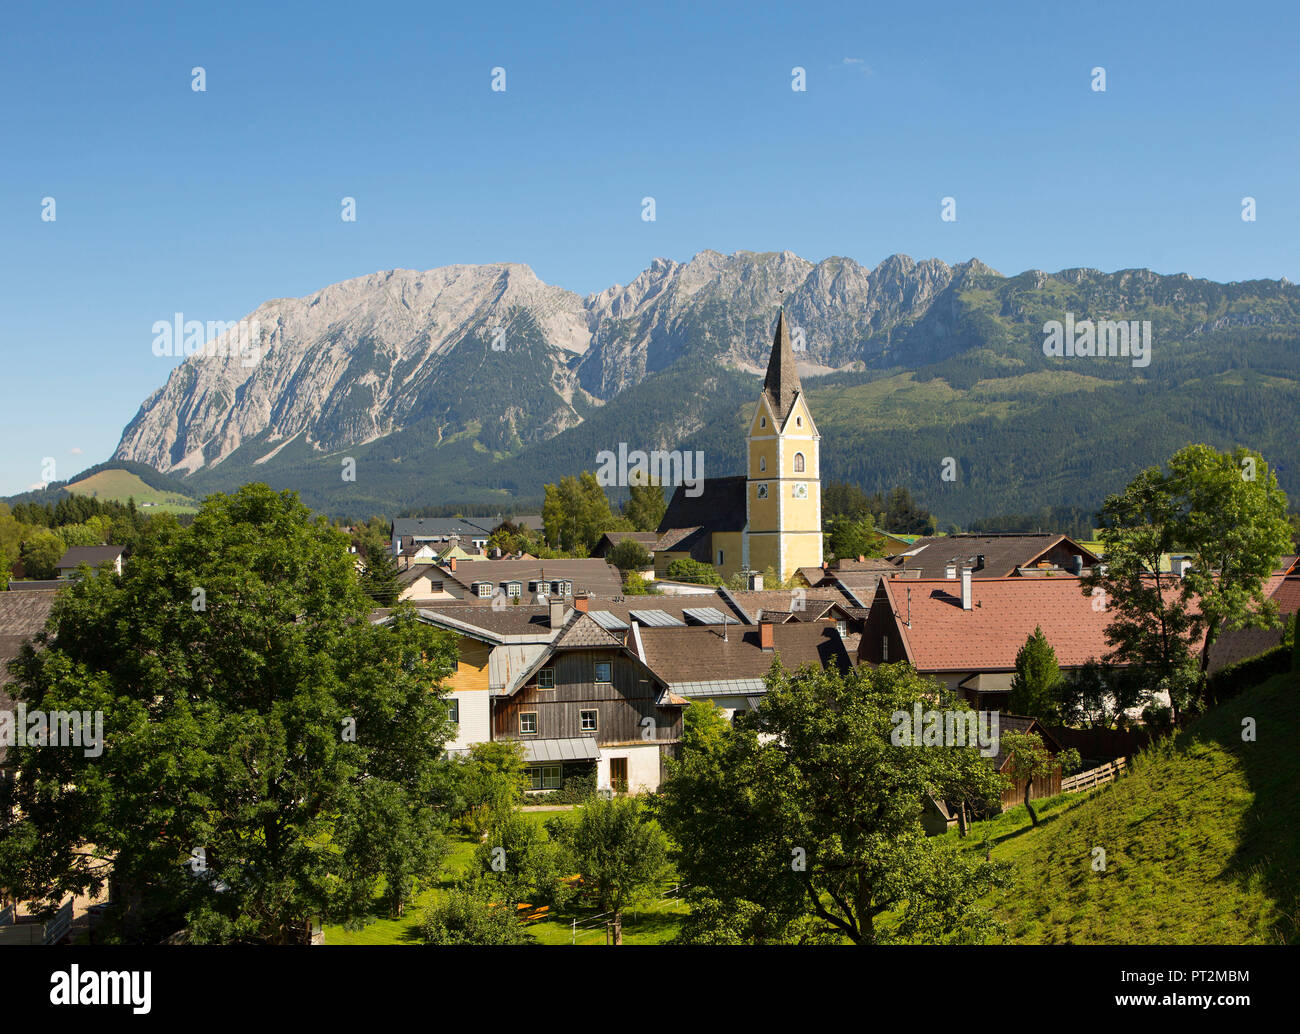 Austria, Styria, Salzkammergut, Styrian Salzkammergut, Ausseerland, Bad Mitterndorf with Grimming, Stock Photo